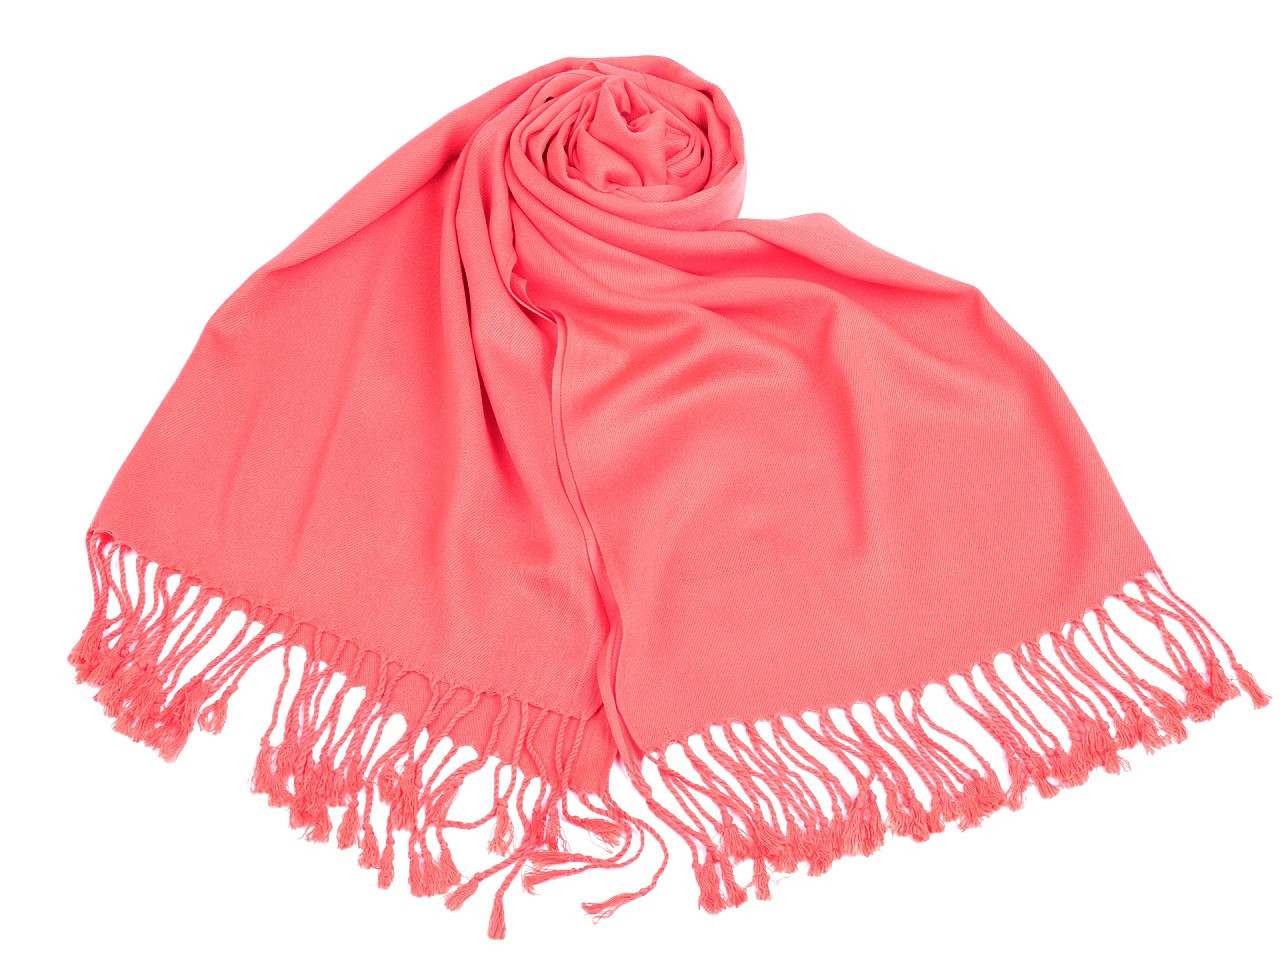 Šátek / šála jednobarevná s třásněmi 65x180 cm, barva 6 růžová korálová